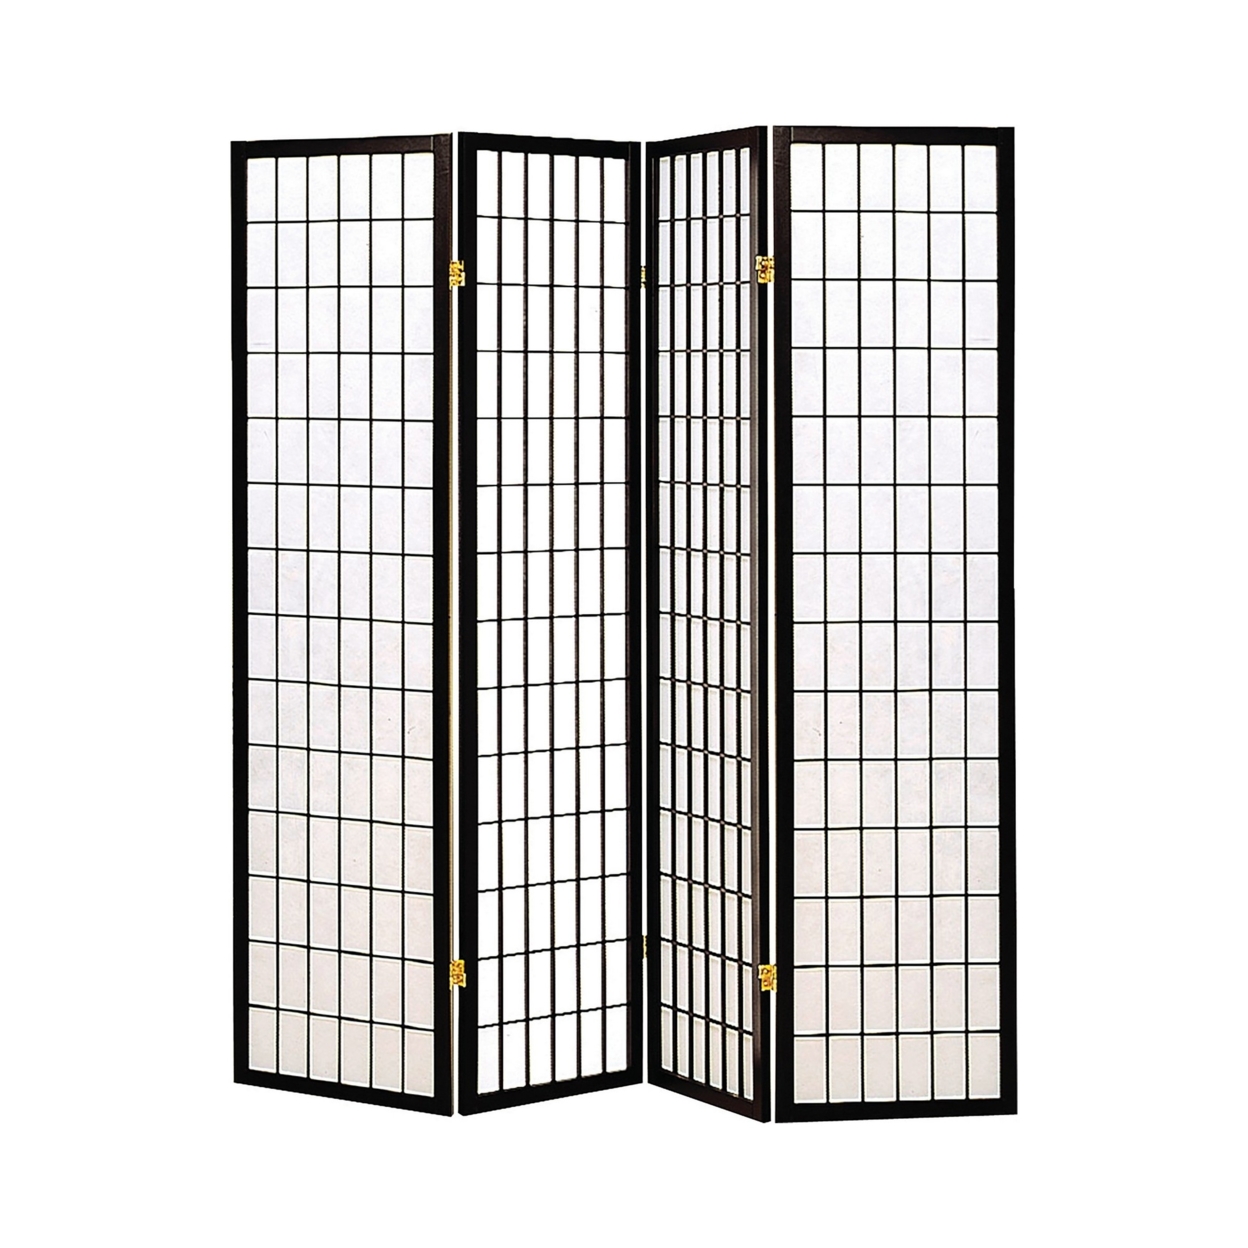 4 Panel Foldable Wooden Frame Room Divider With Grid Design, Black- Saltoro Sherpi